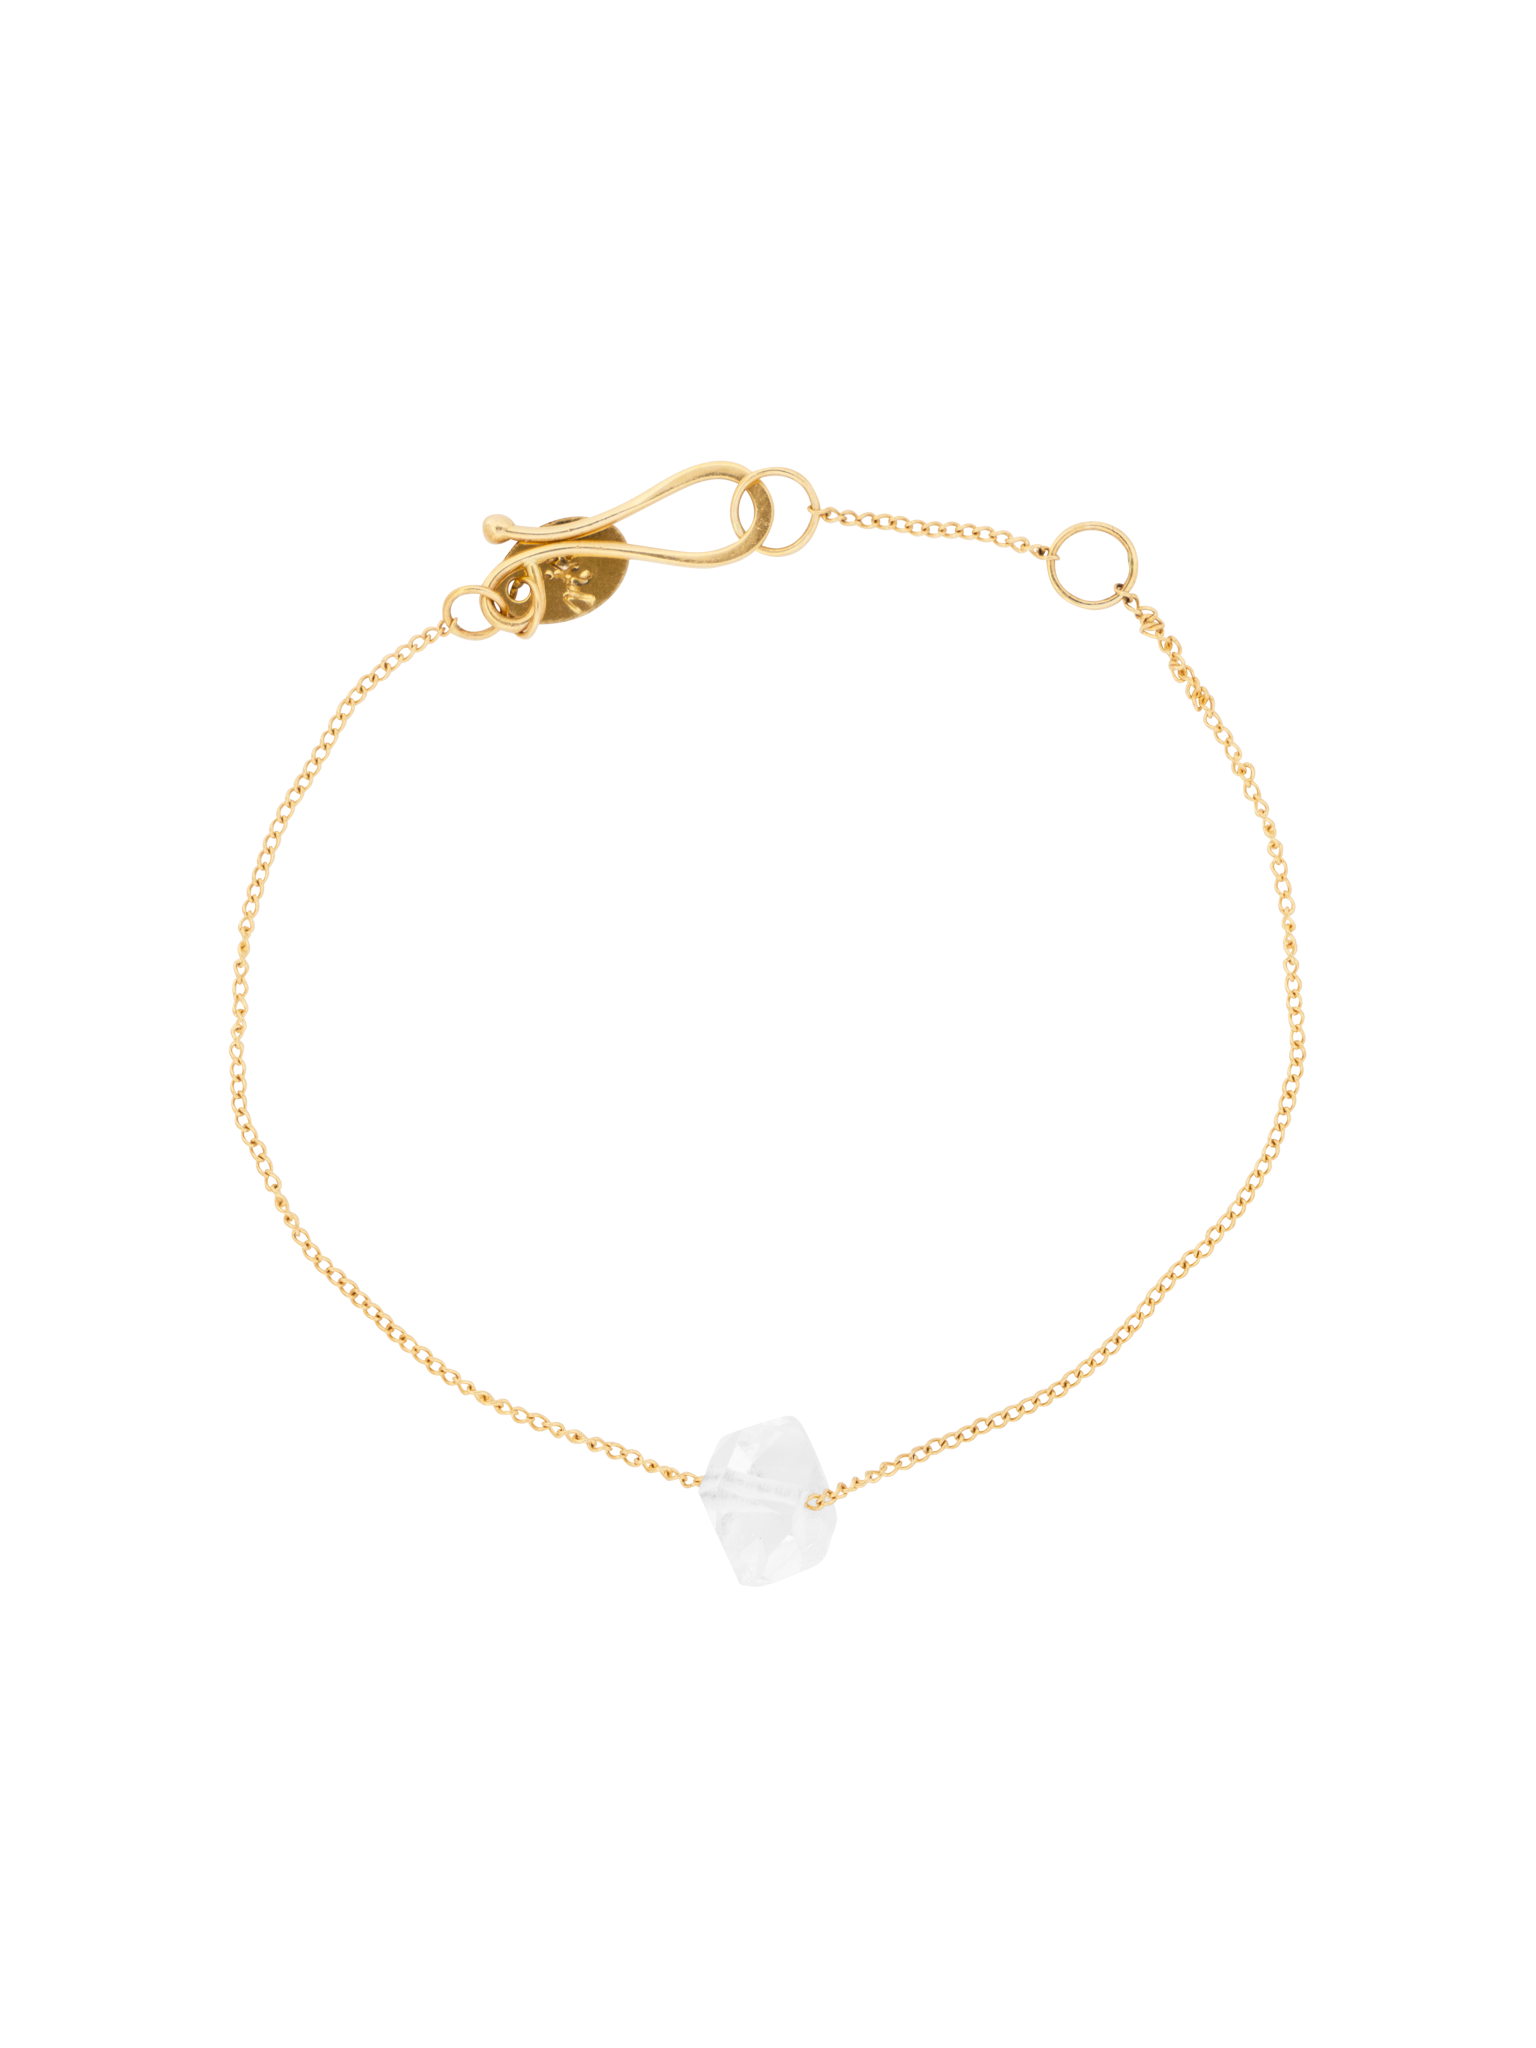 Floating herkimer diamond chain bracelet